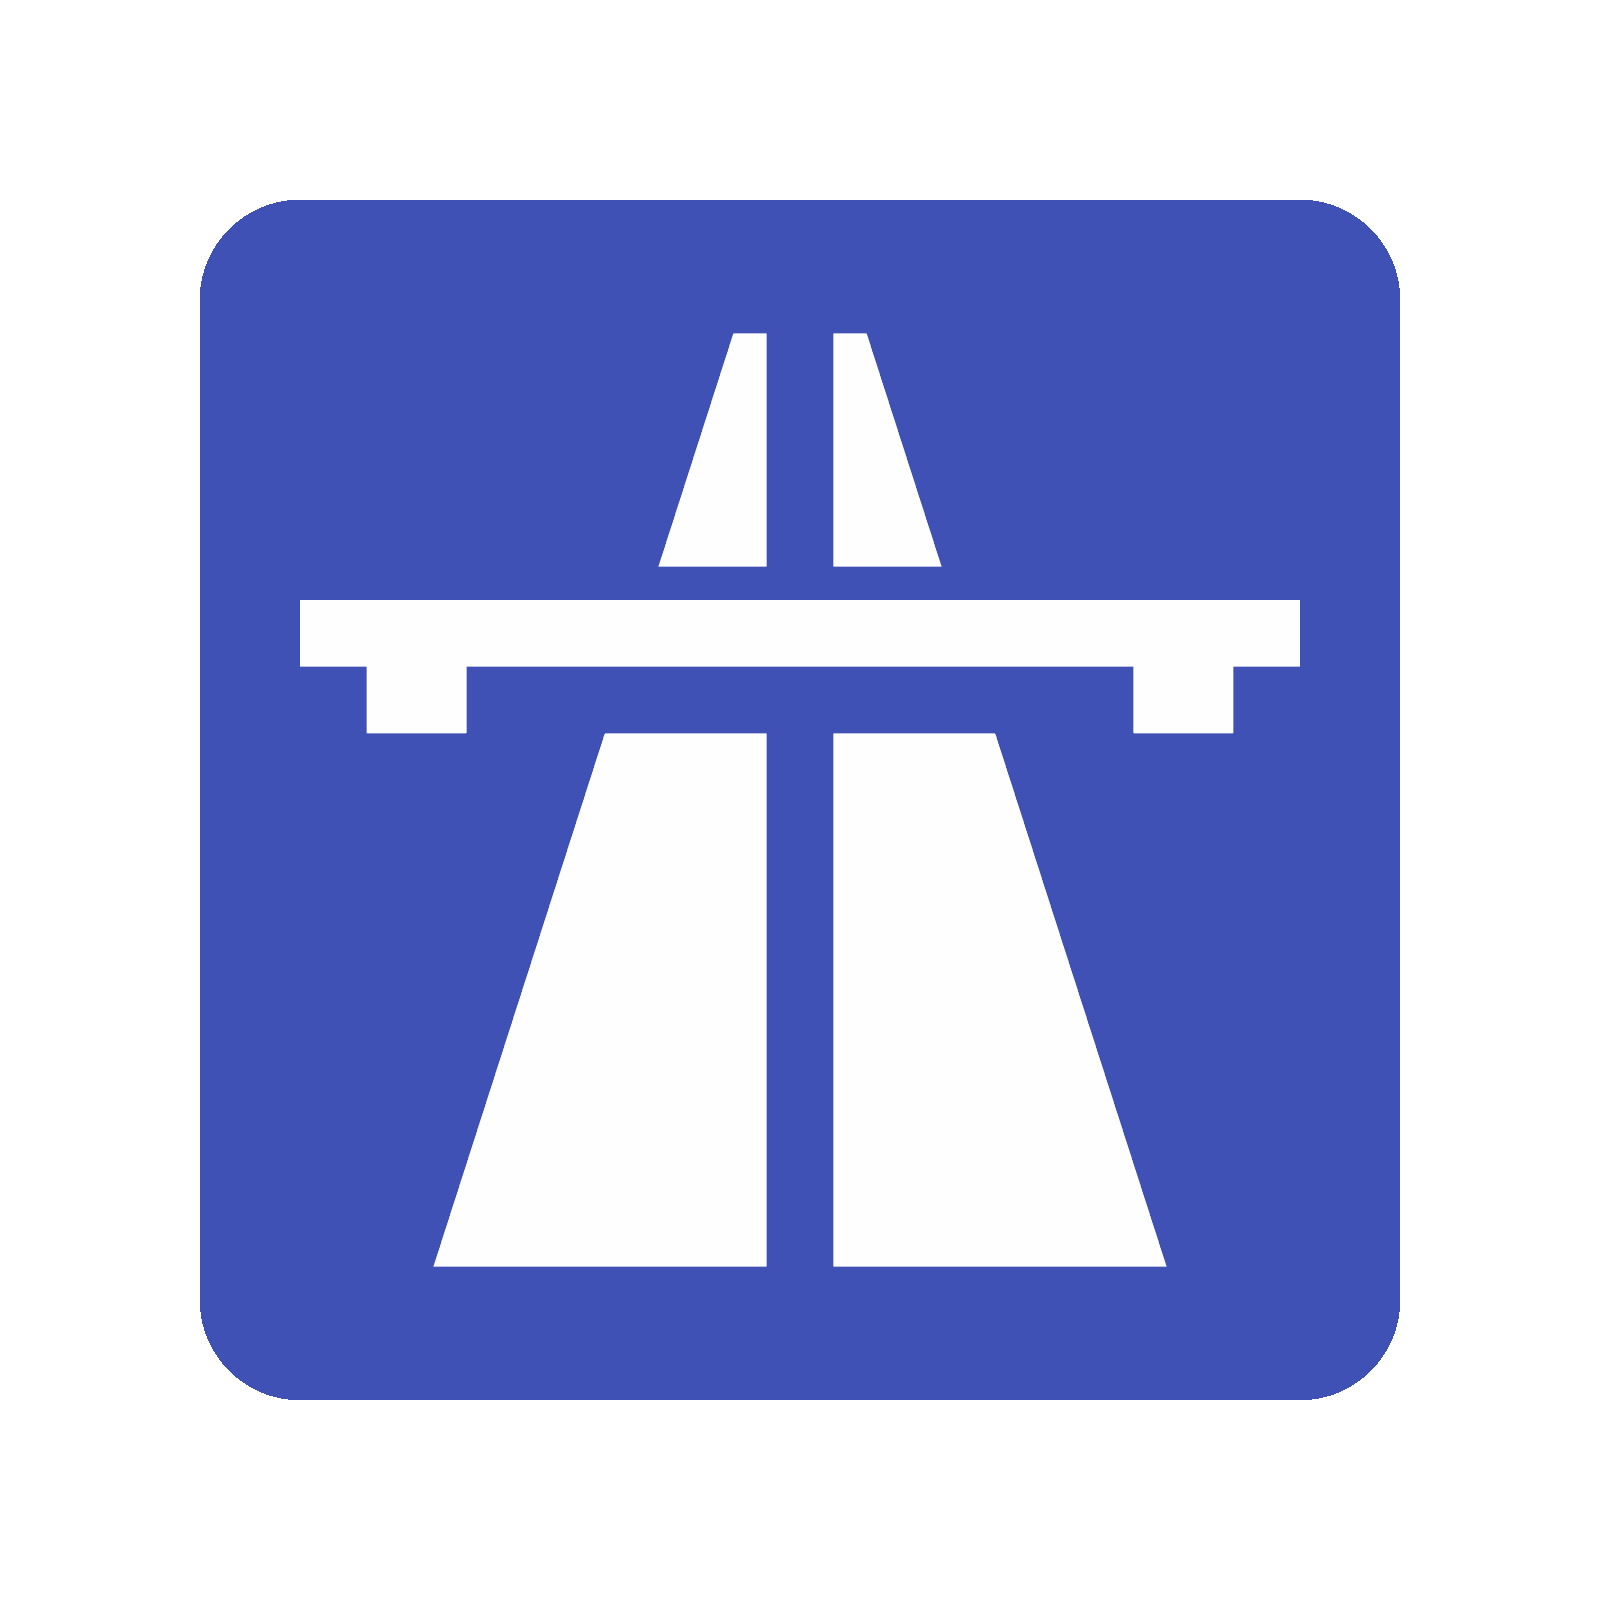 Autobahn icon. Cartoon illust